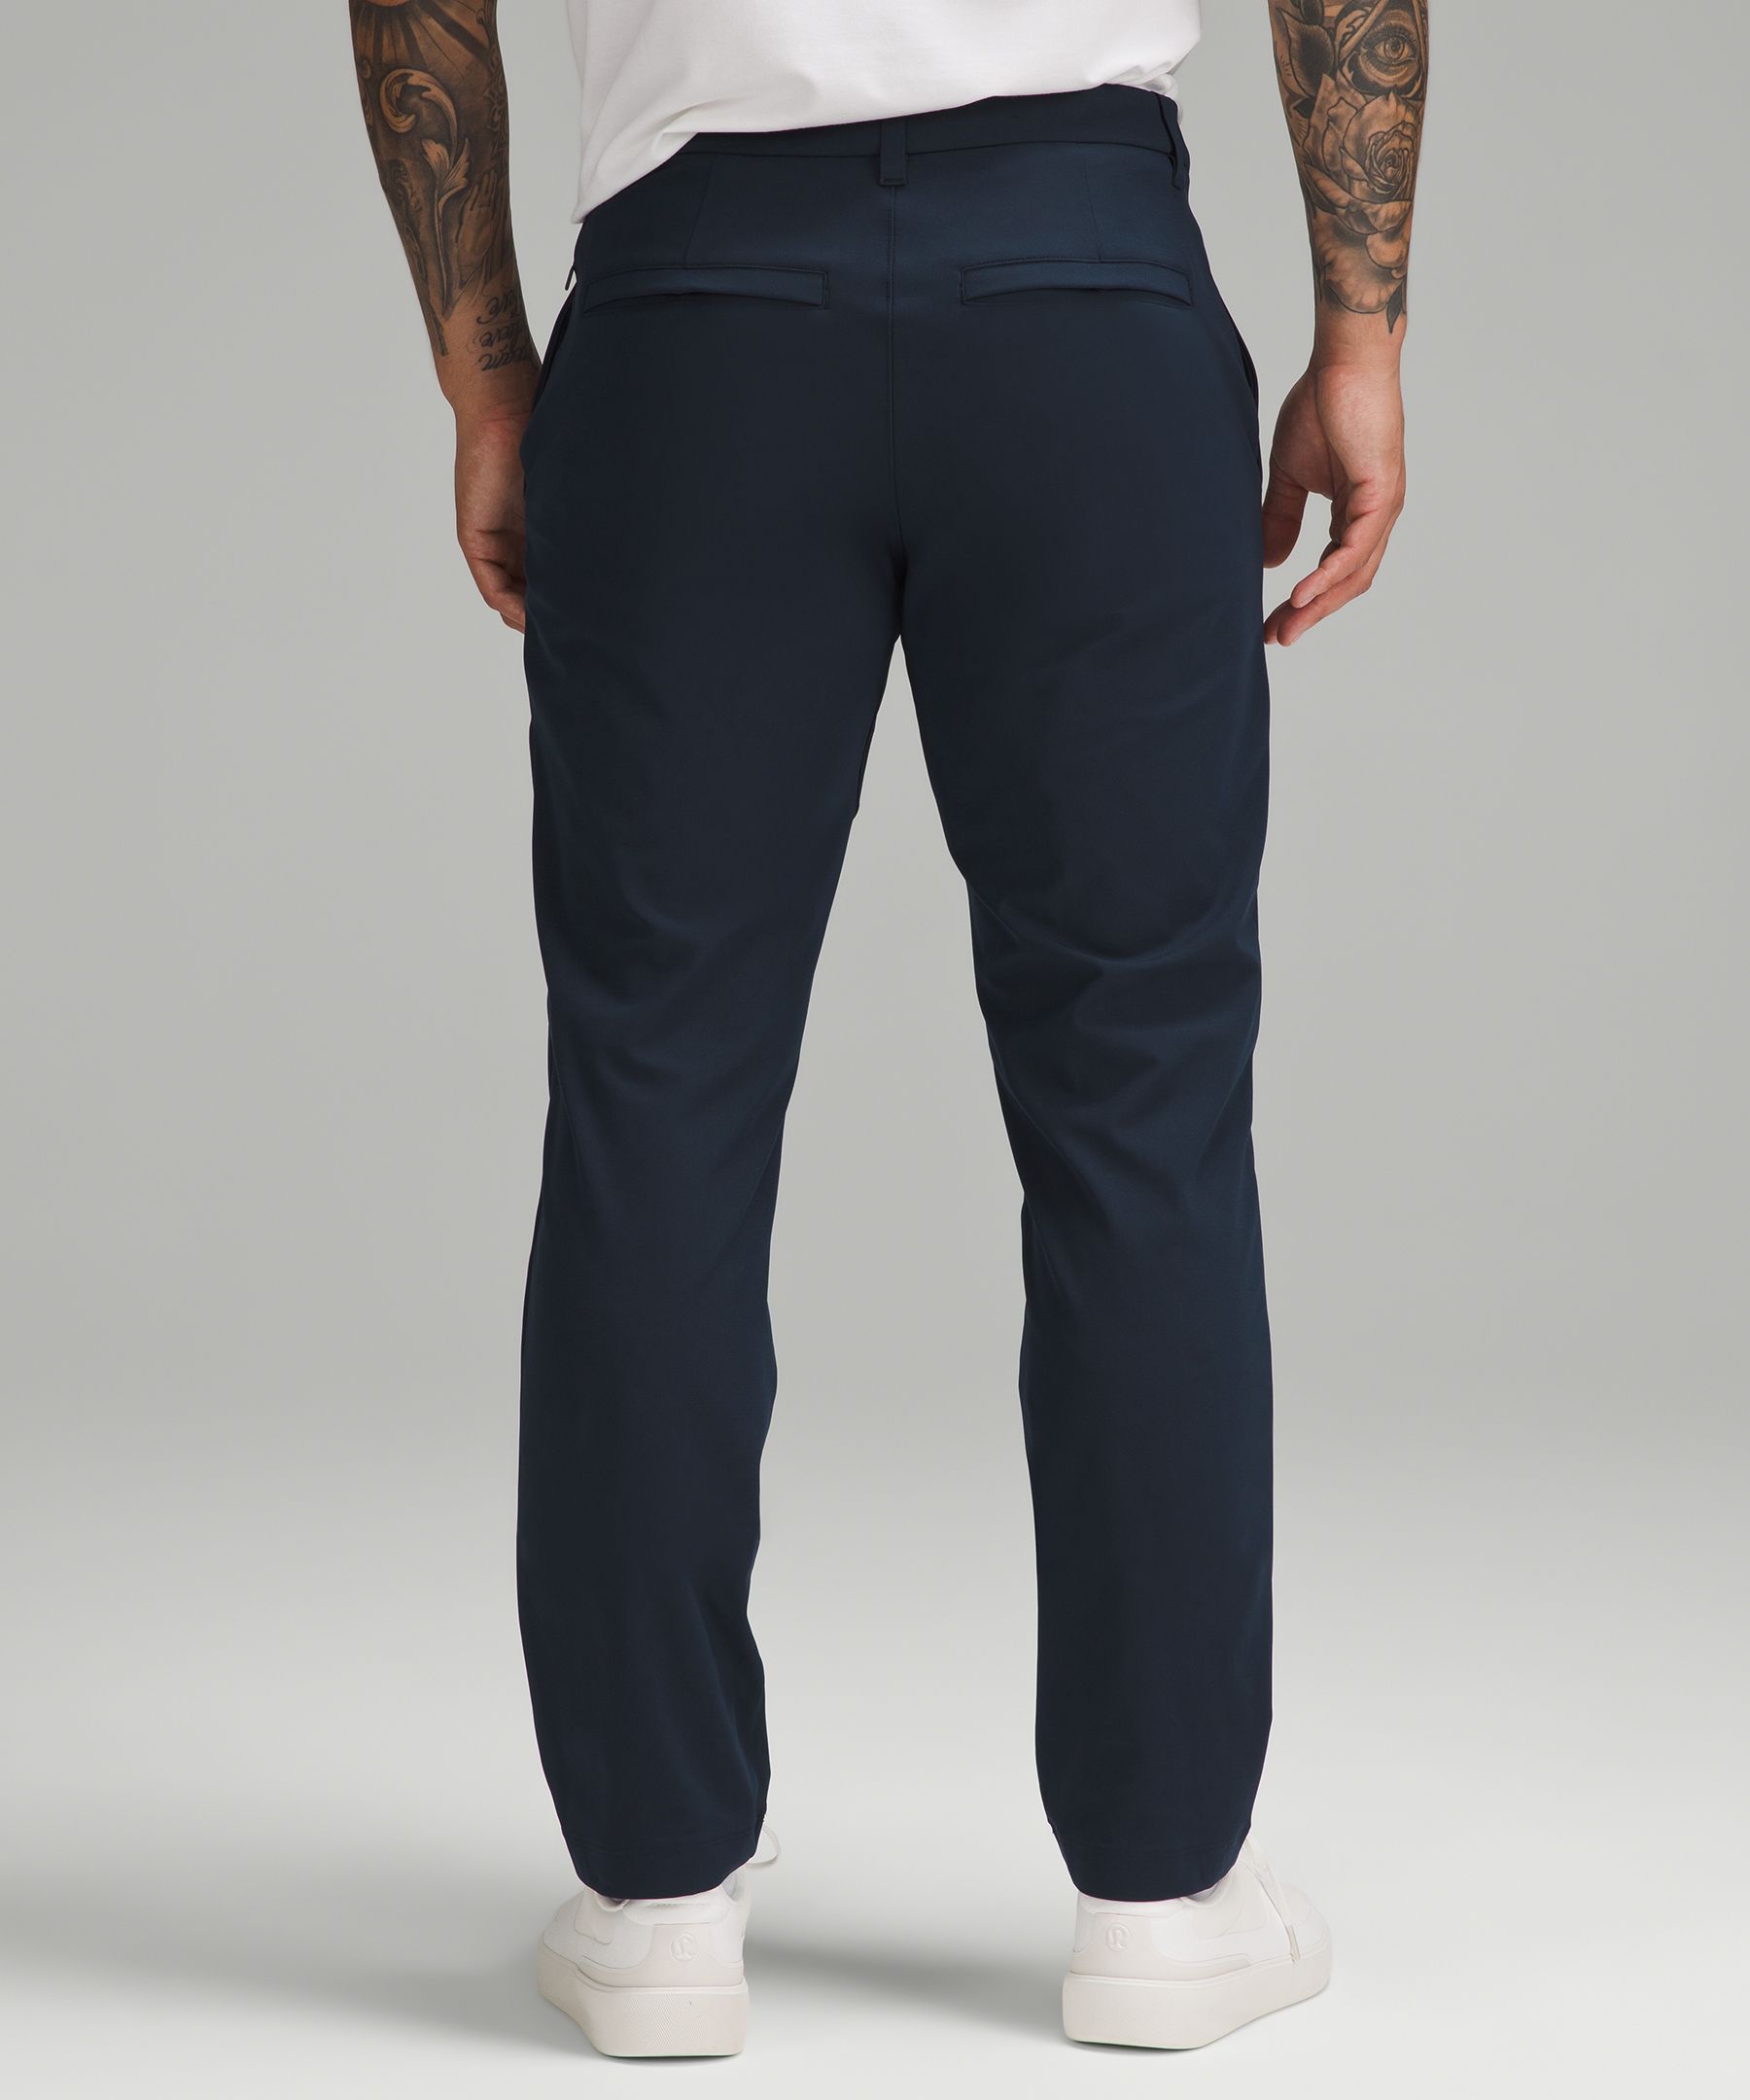 Lululemon Men Size 28 Commission Pant Slim 32”L Blue TRNV Warpstreme Causal